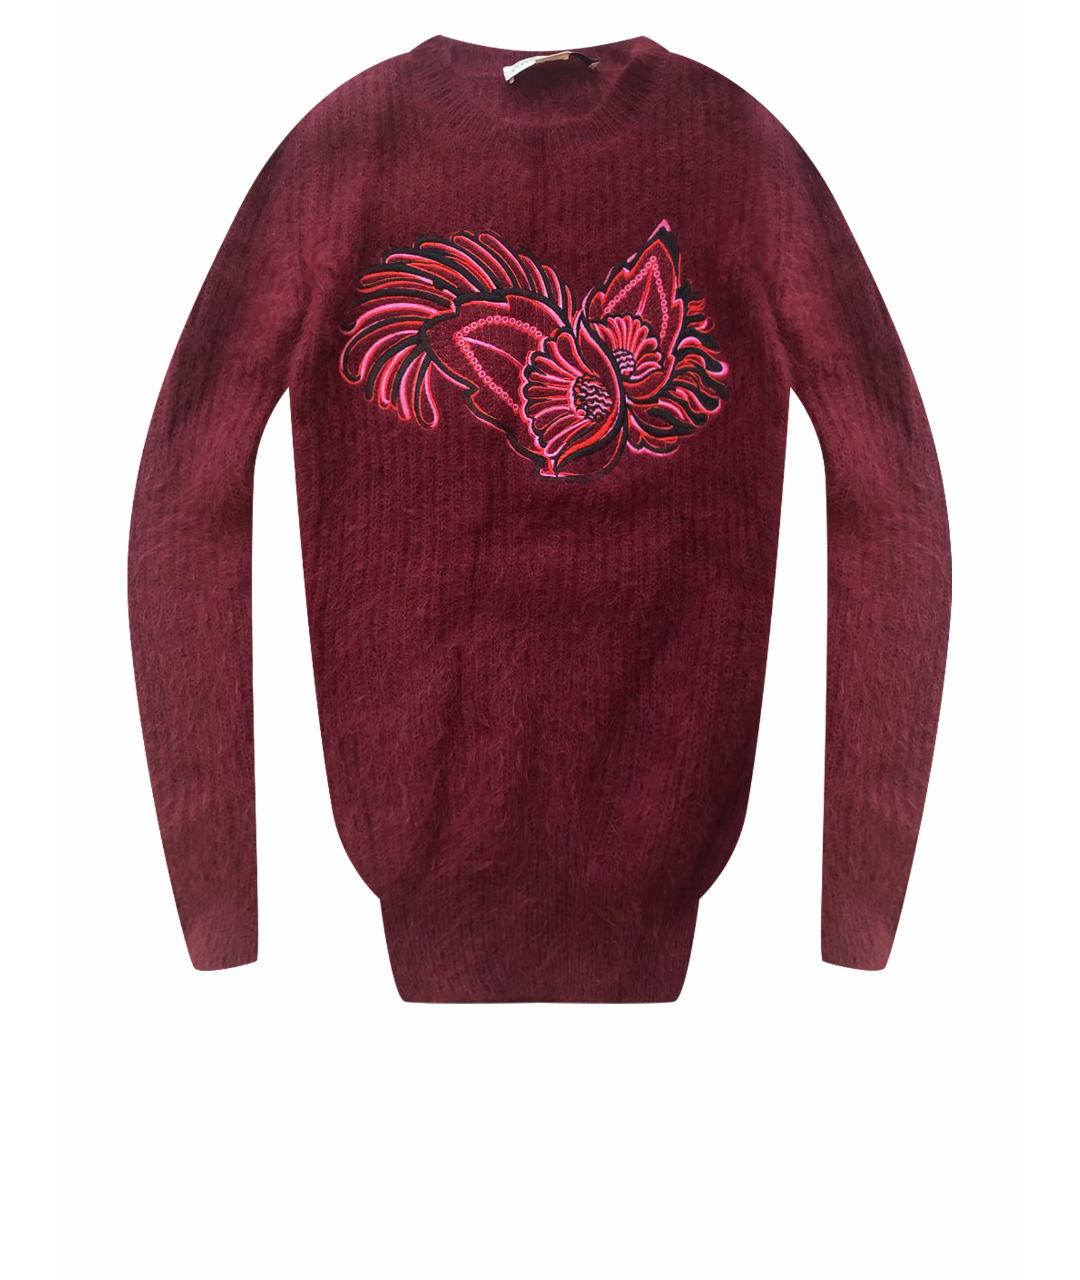 STELLA MCCARTNEY Бордовый шерстяной джемпер / свитер, фото 1